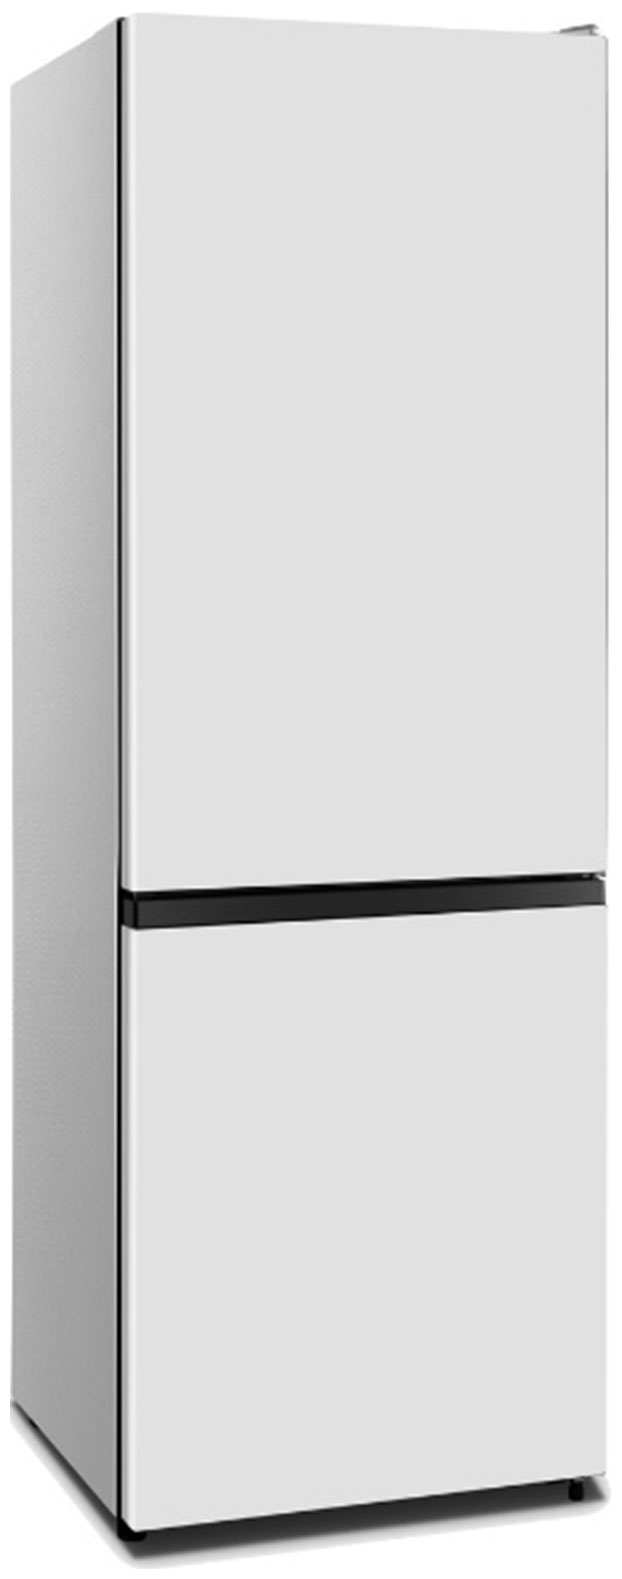 Холодильник HISENSE RB372N4AW1 белый мини книжки english покупки shopping уровень 1